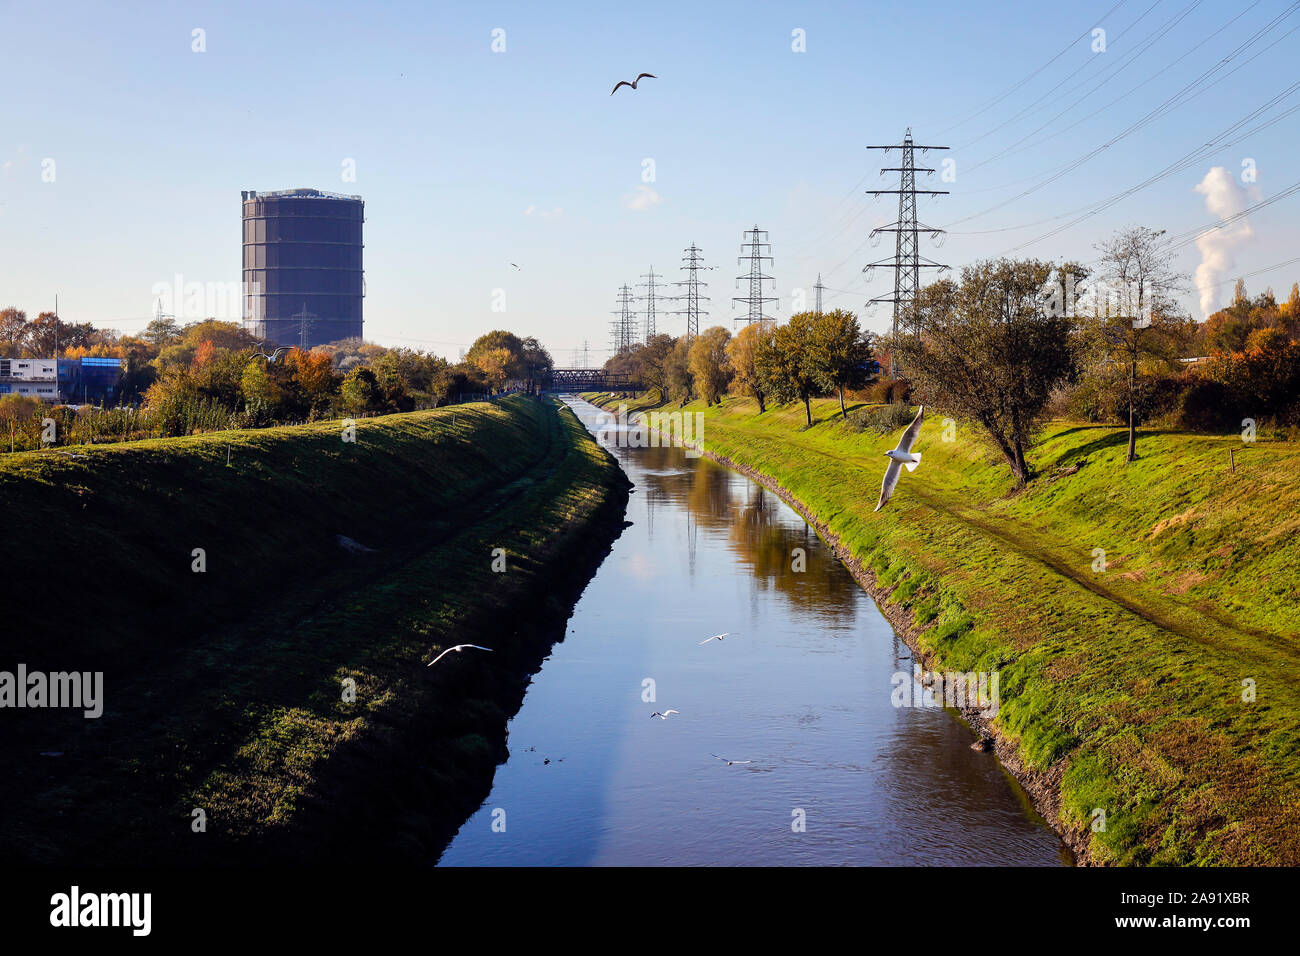 Oberhausen, Ruhrgebiet, Nordrhein-Westfalen, Deutschland - Emscher, in dieser noch nicht renaturiert Fluss Abschnitt noch Abwasser wird entlassen, mit dem Em Stockfoto